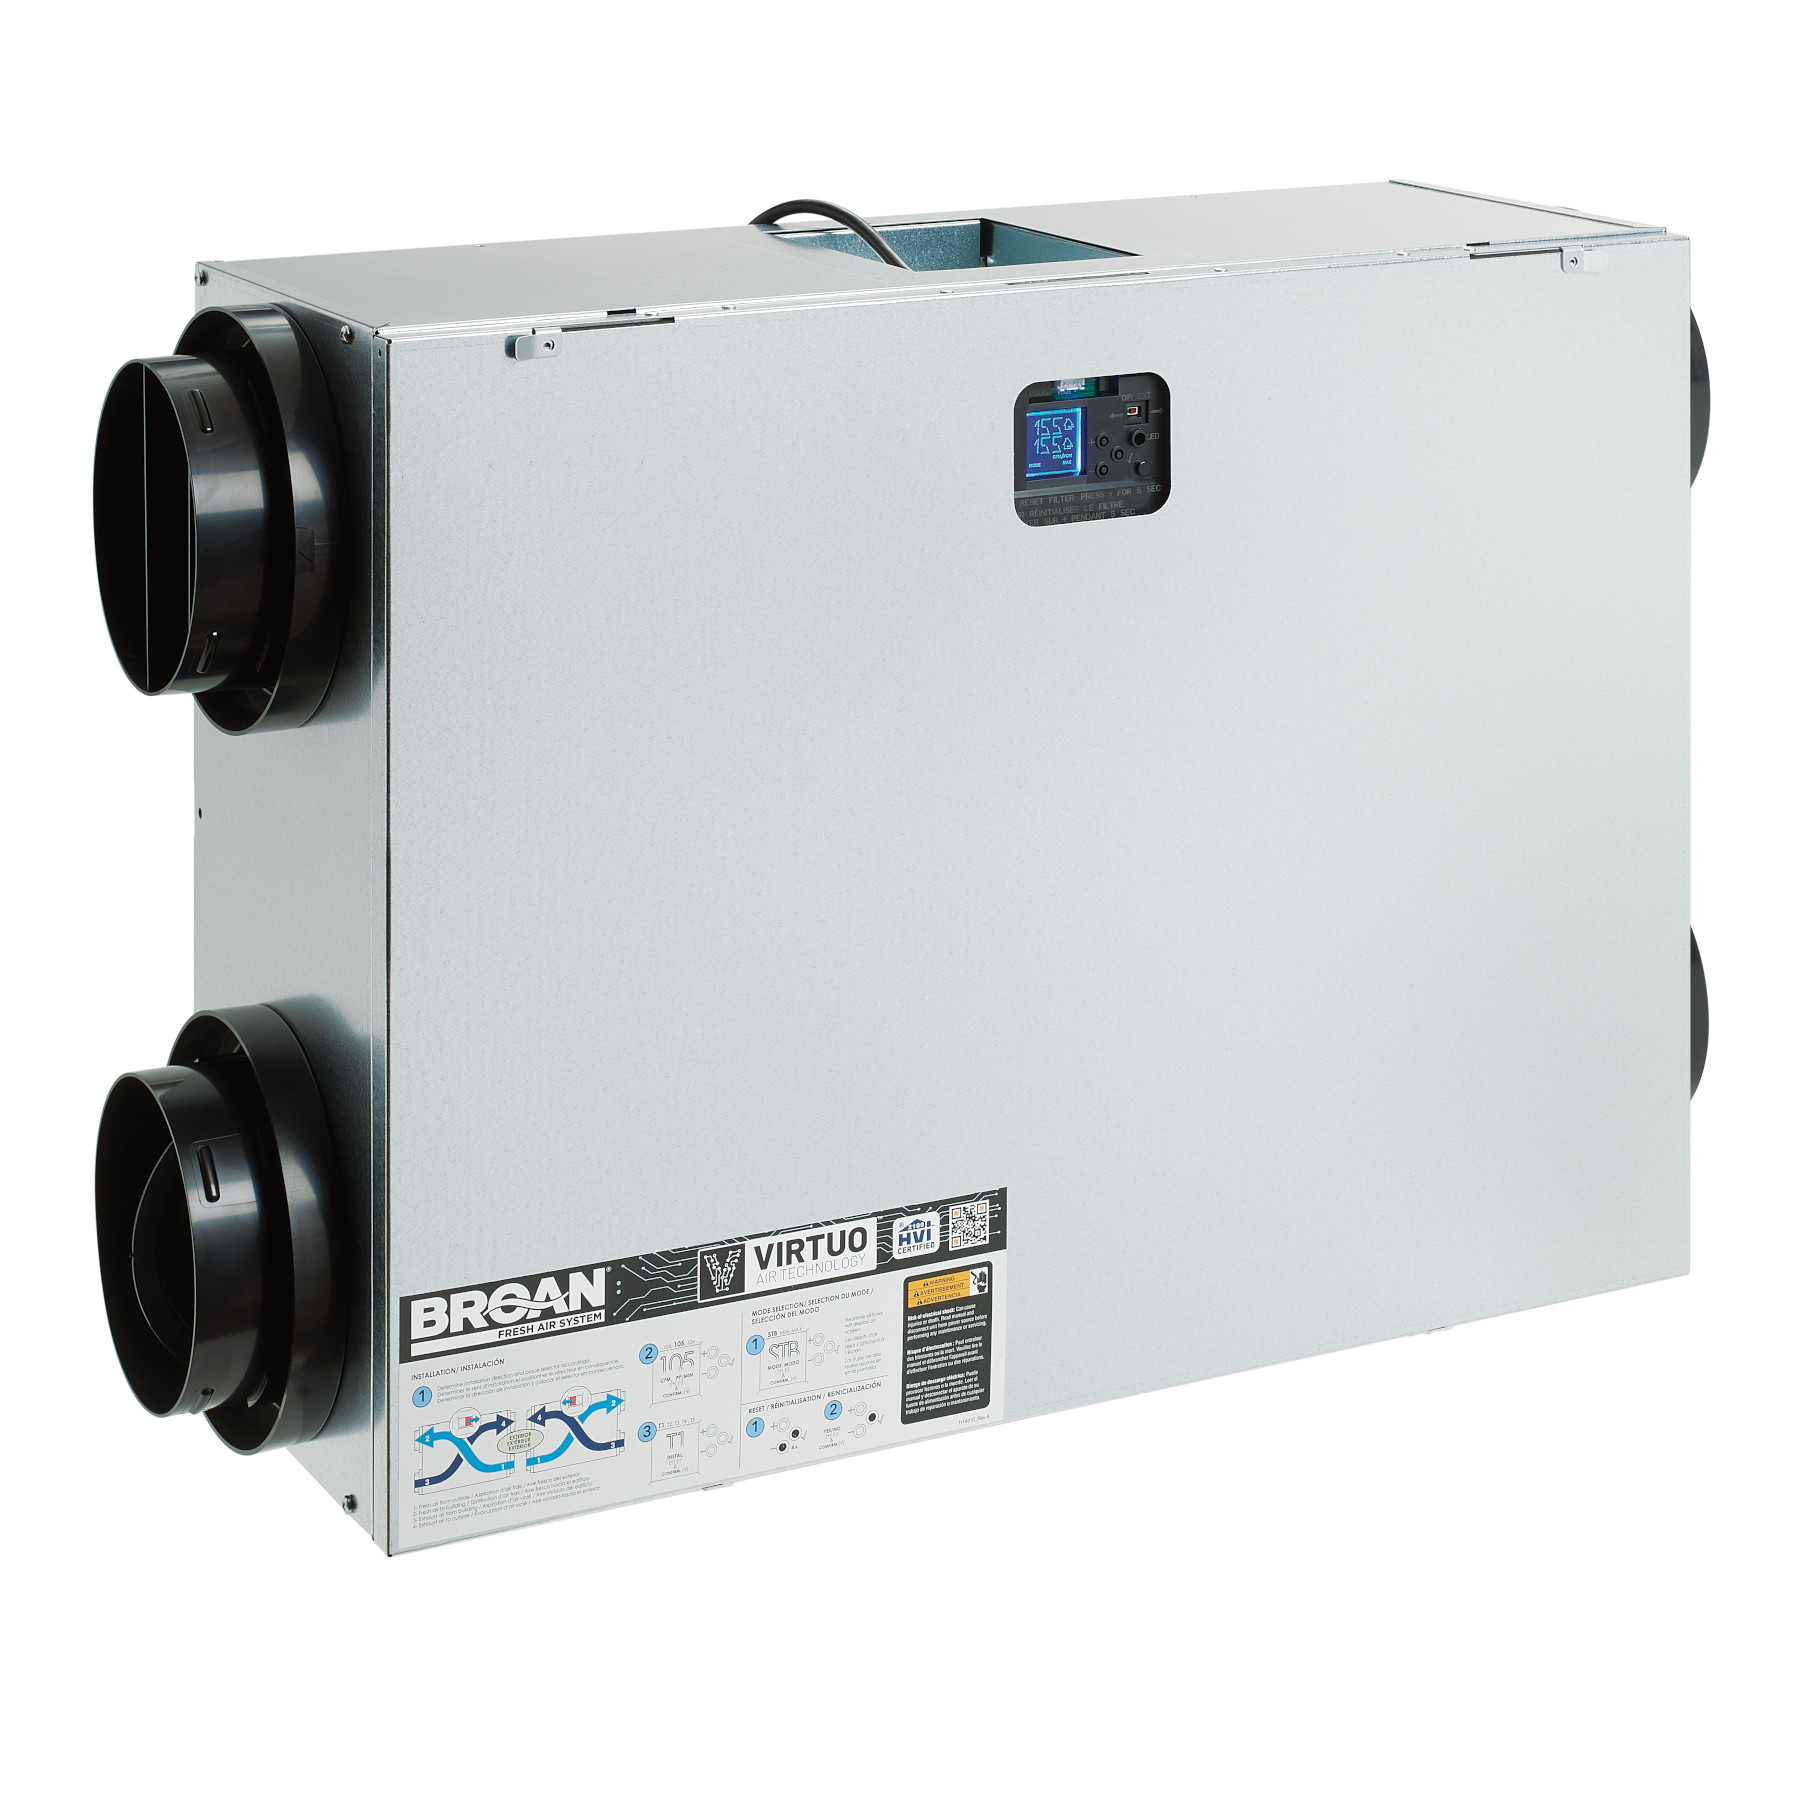 Broan® ONE Ventilateur Récupérateur d'Énergie (VRE), Cordon d'alimentation